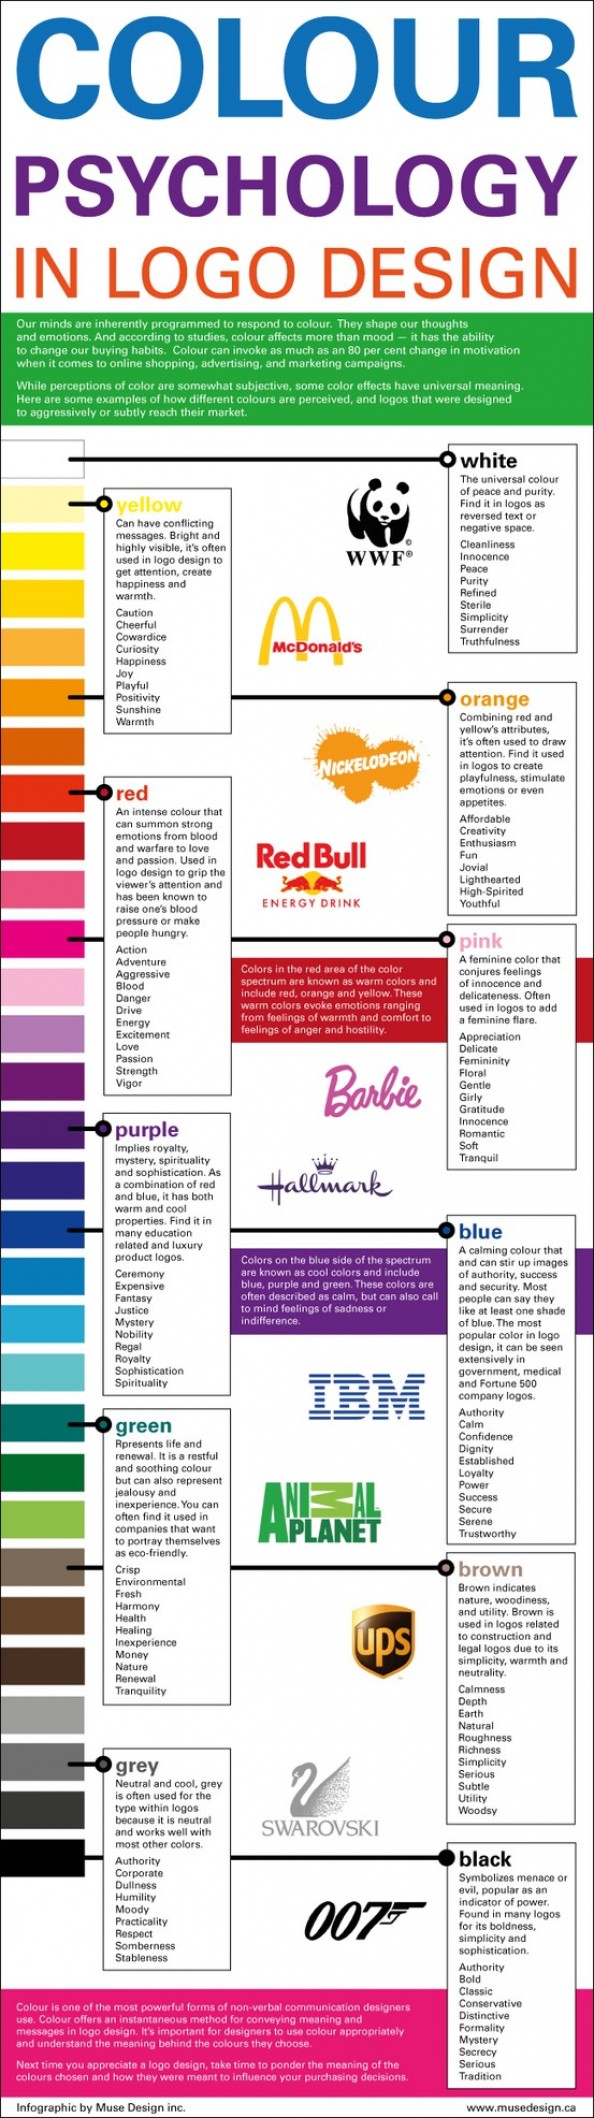 Color Psychology in Logo Design